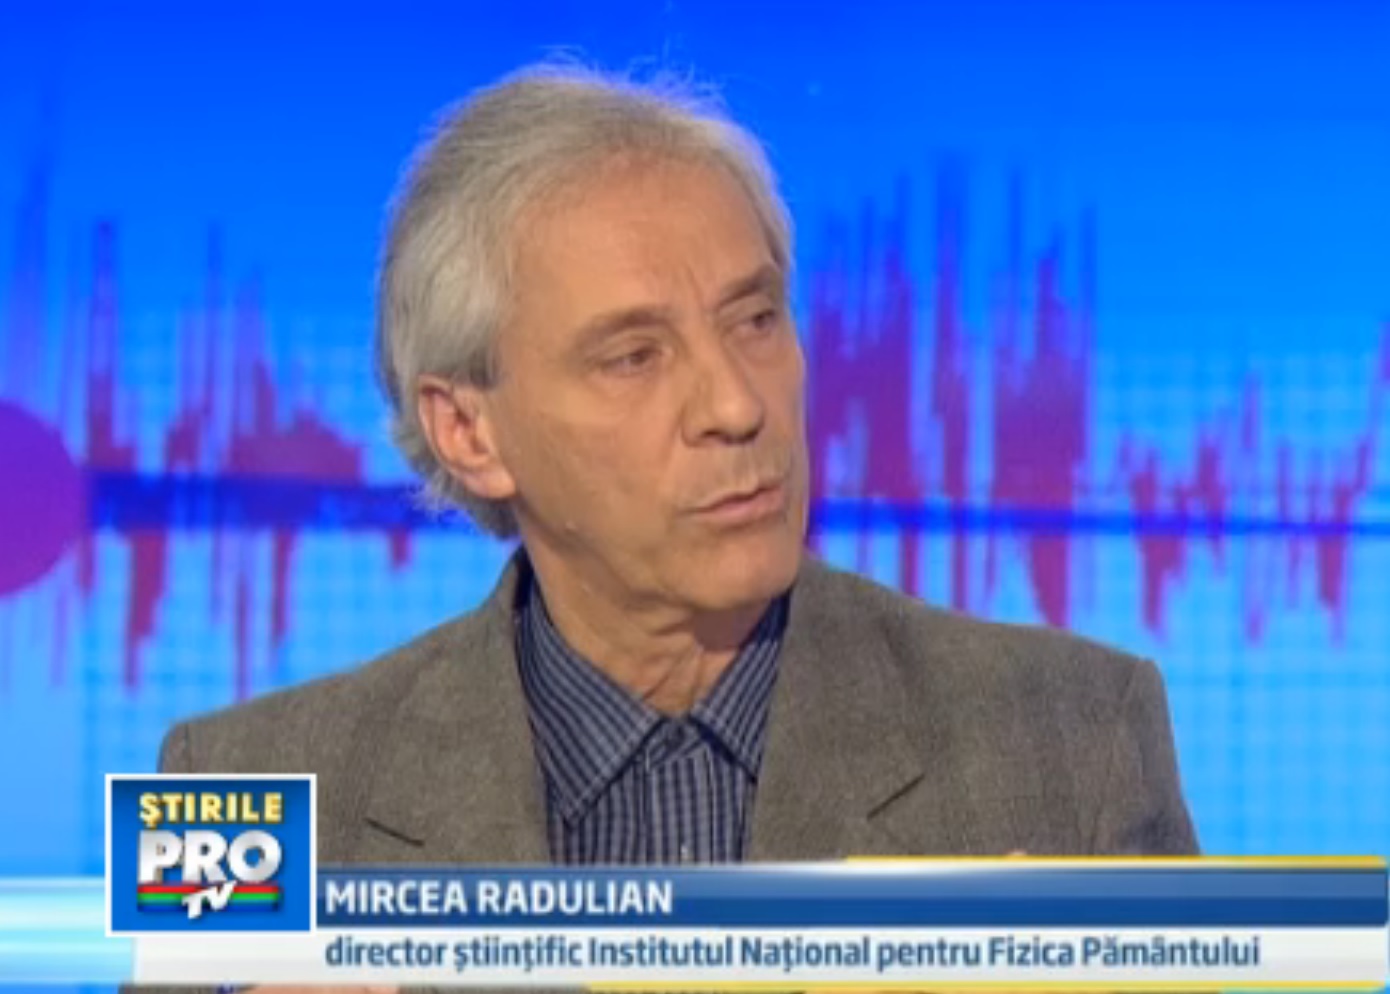 Directorul stiintific al Institutul National pentru Fizica Pamantului dr. Mircea Radulian.